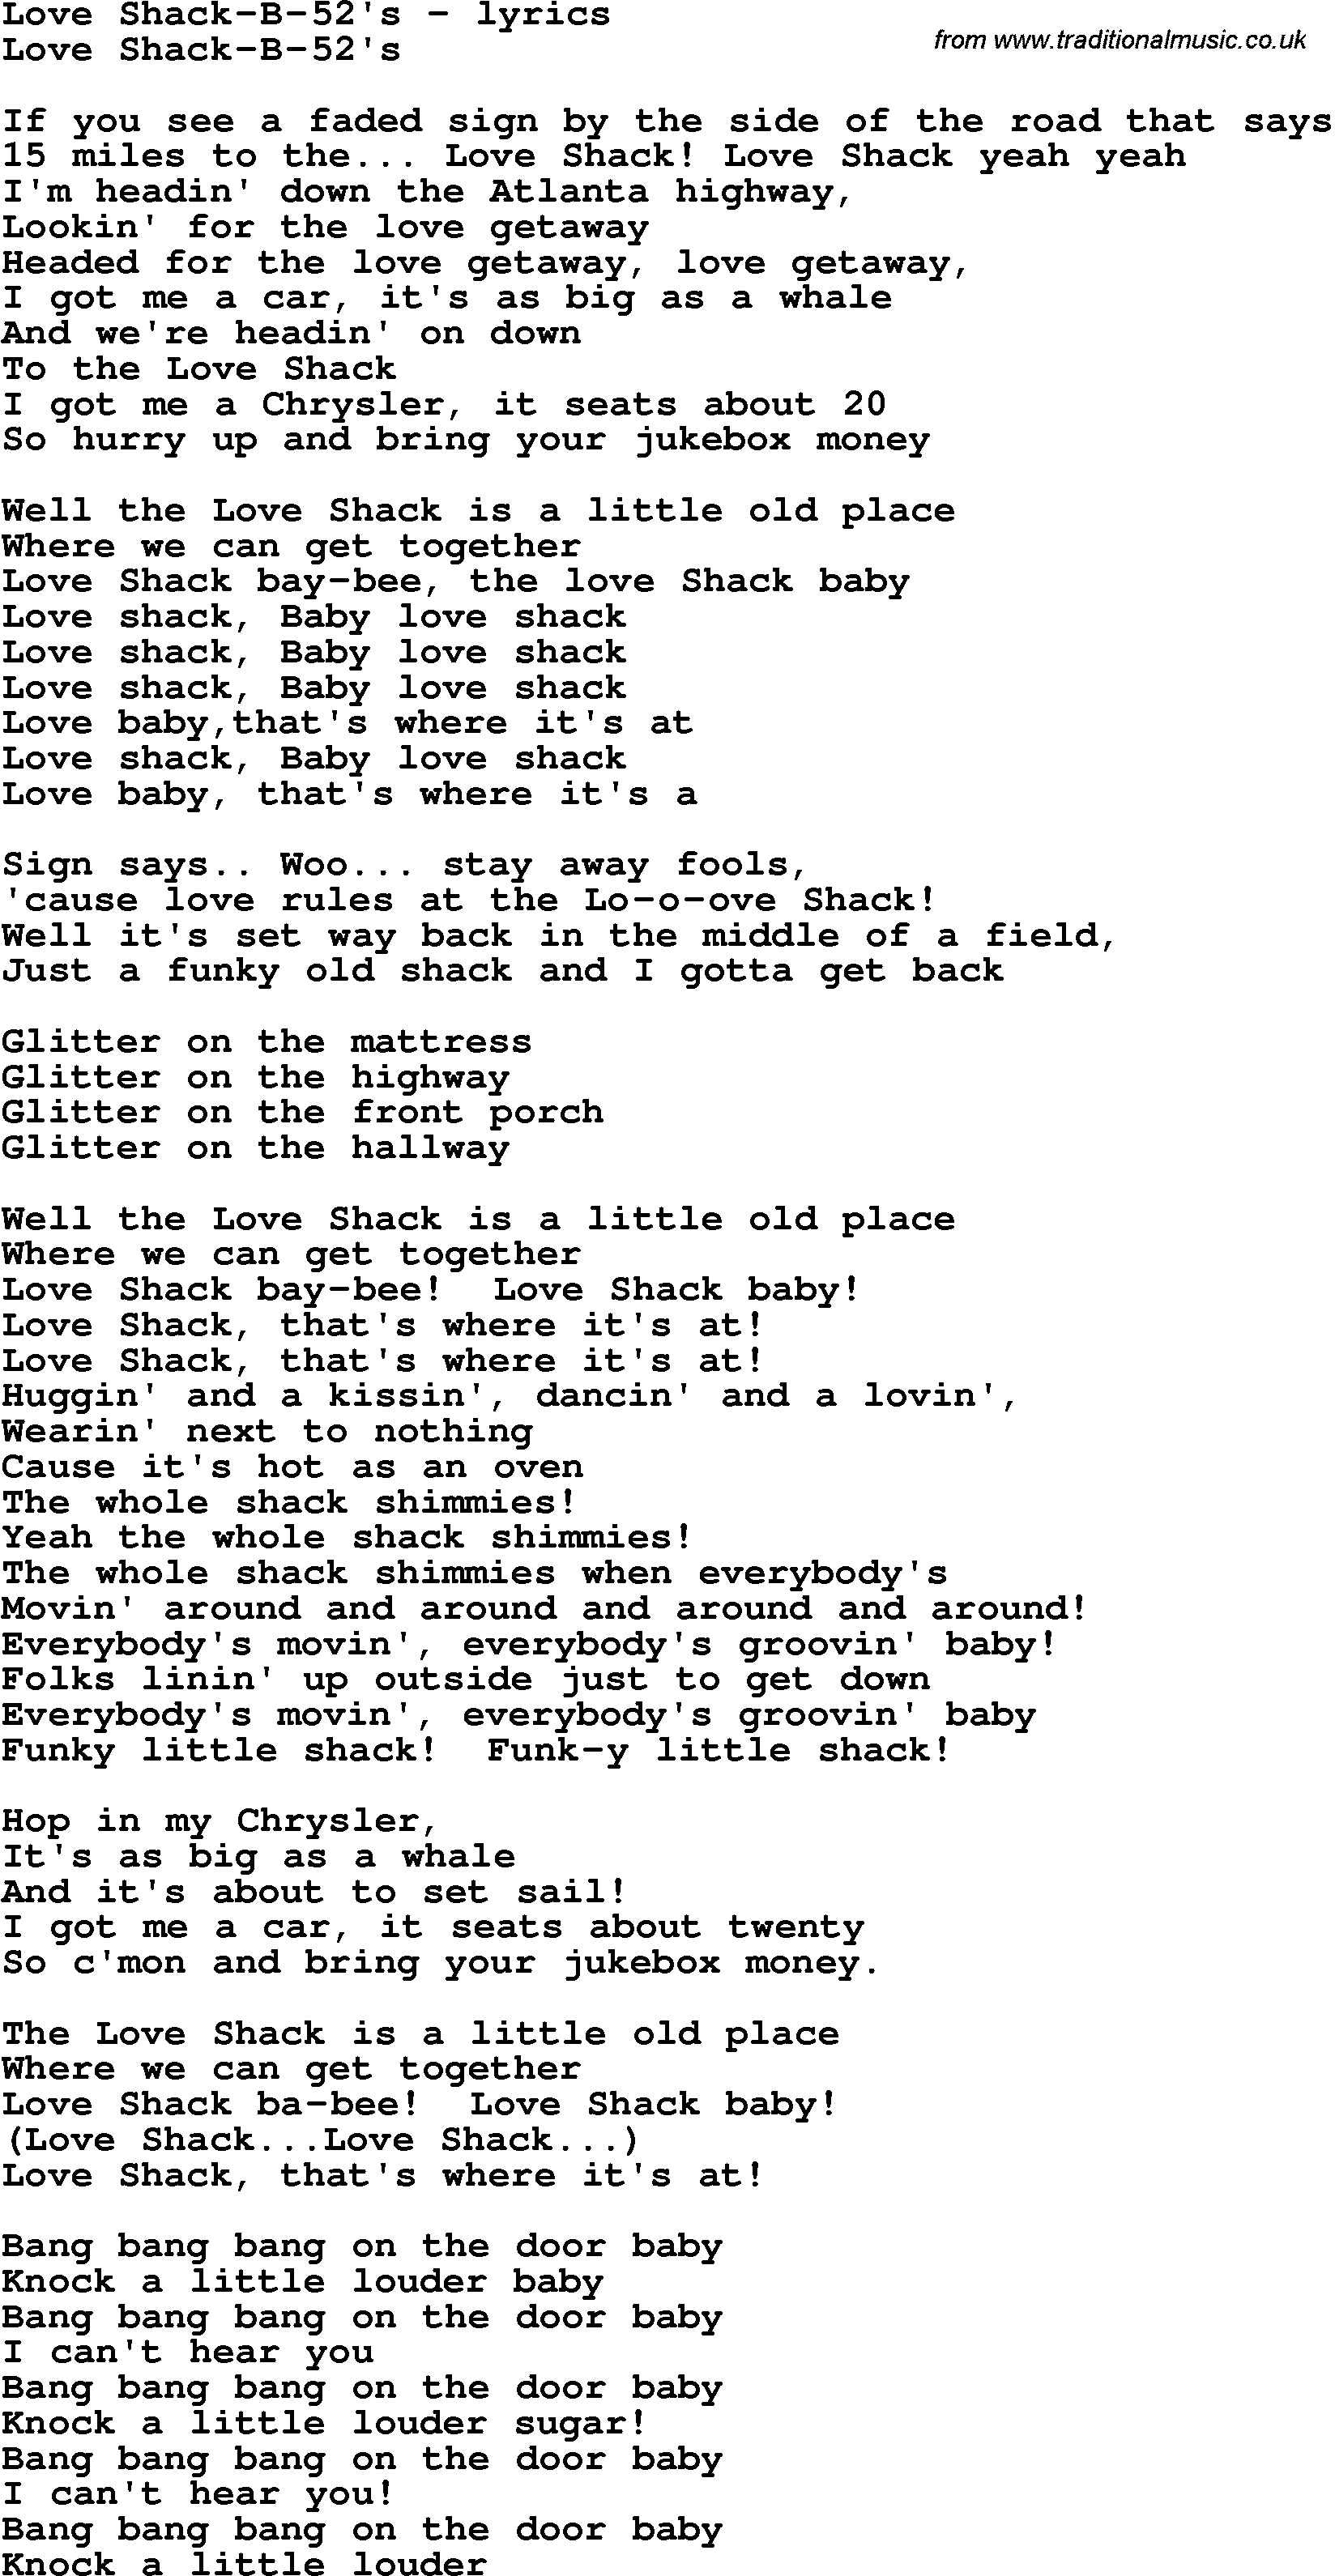 Love Song Lyrics for: Love Shack-B-52's